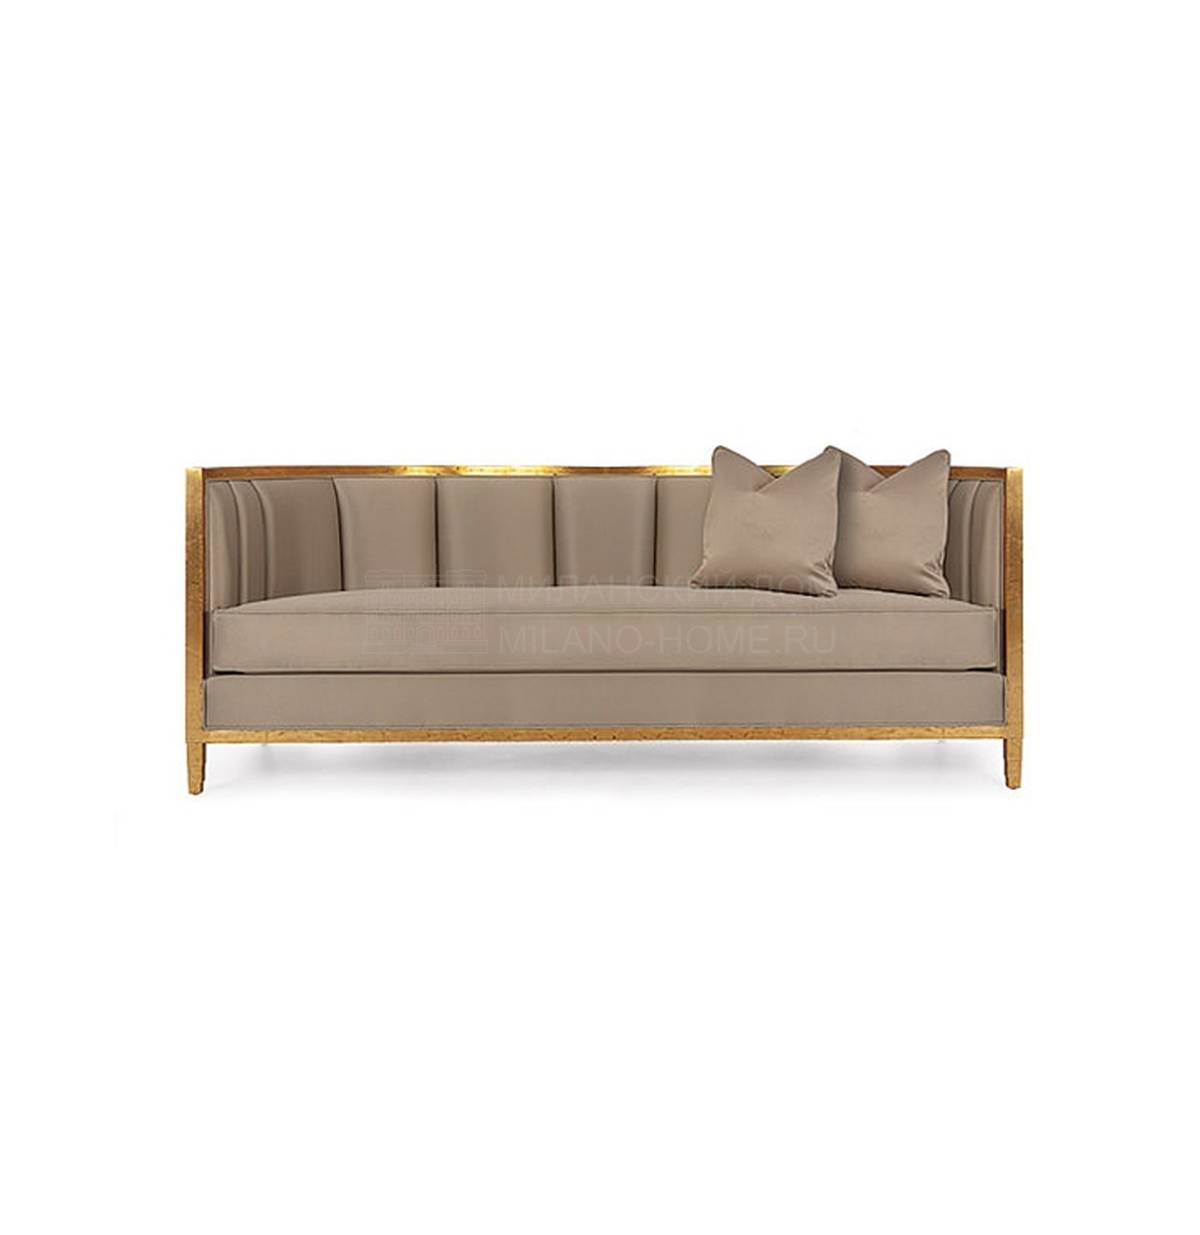 Диван Seurat sofa из США фабрики CHRISTOPHER GUY